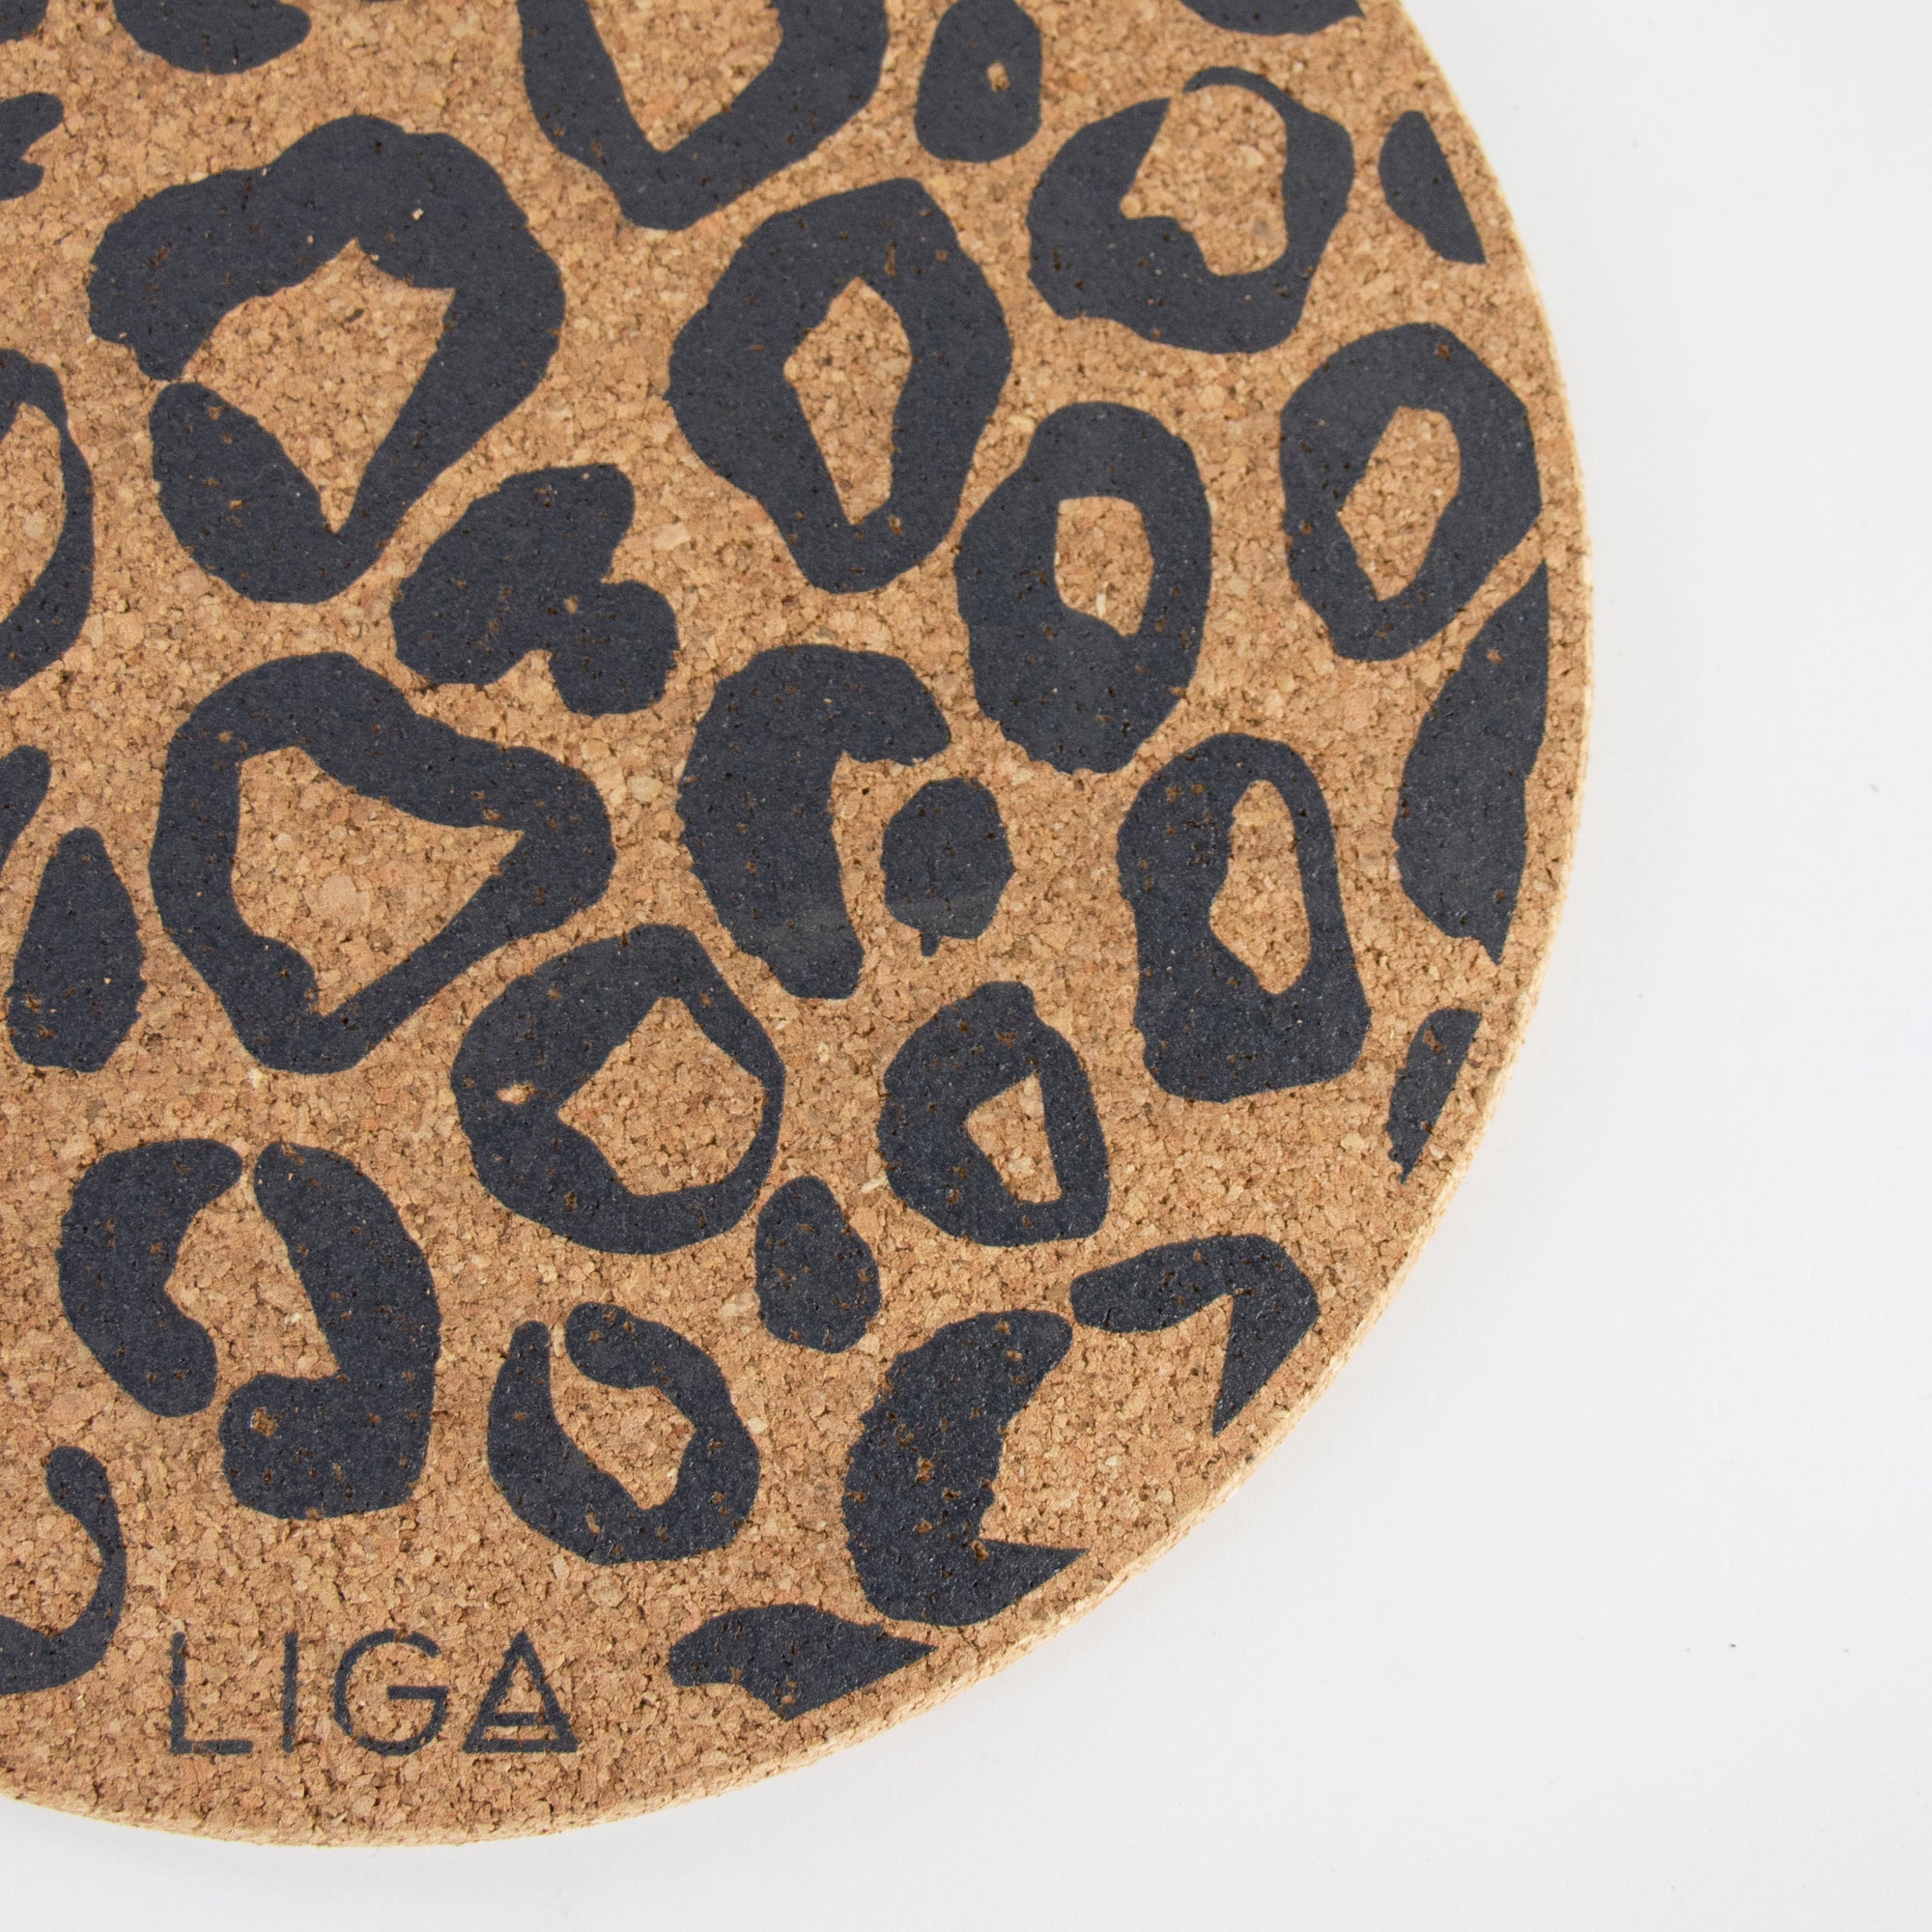 Eco friendly cork placemats + coasters. Leopard Print Design